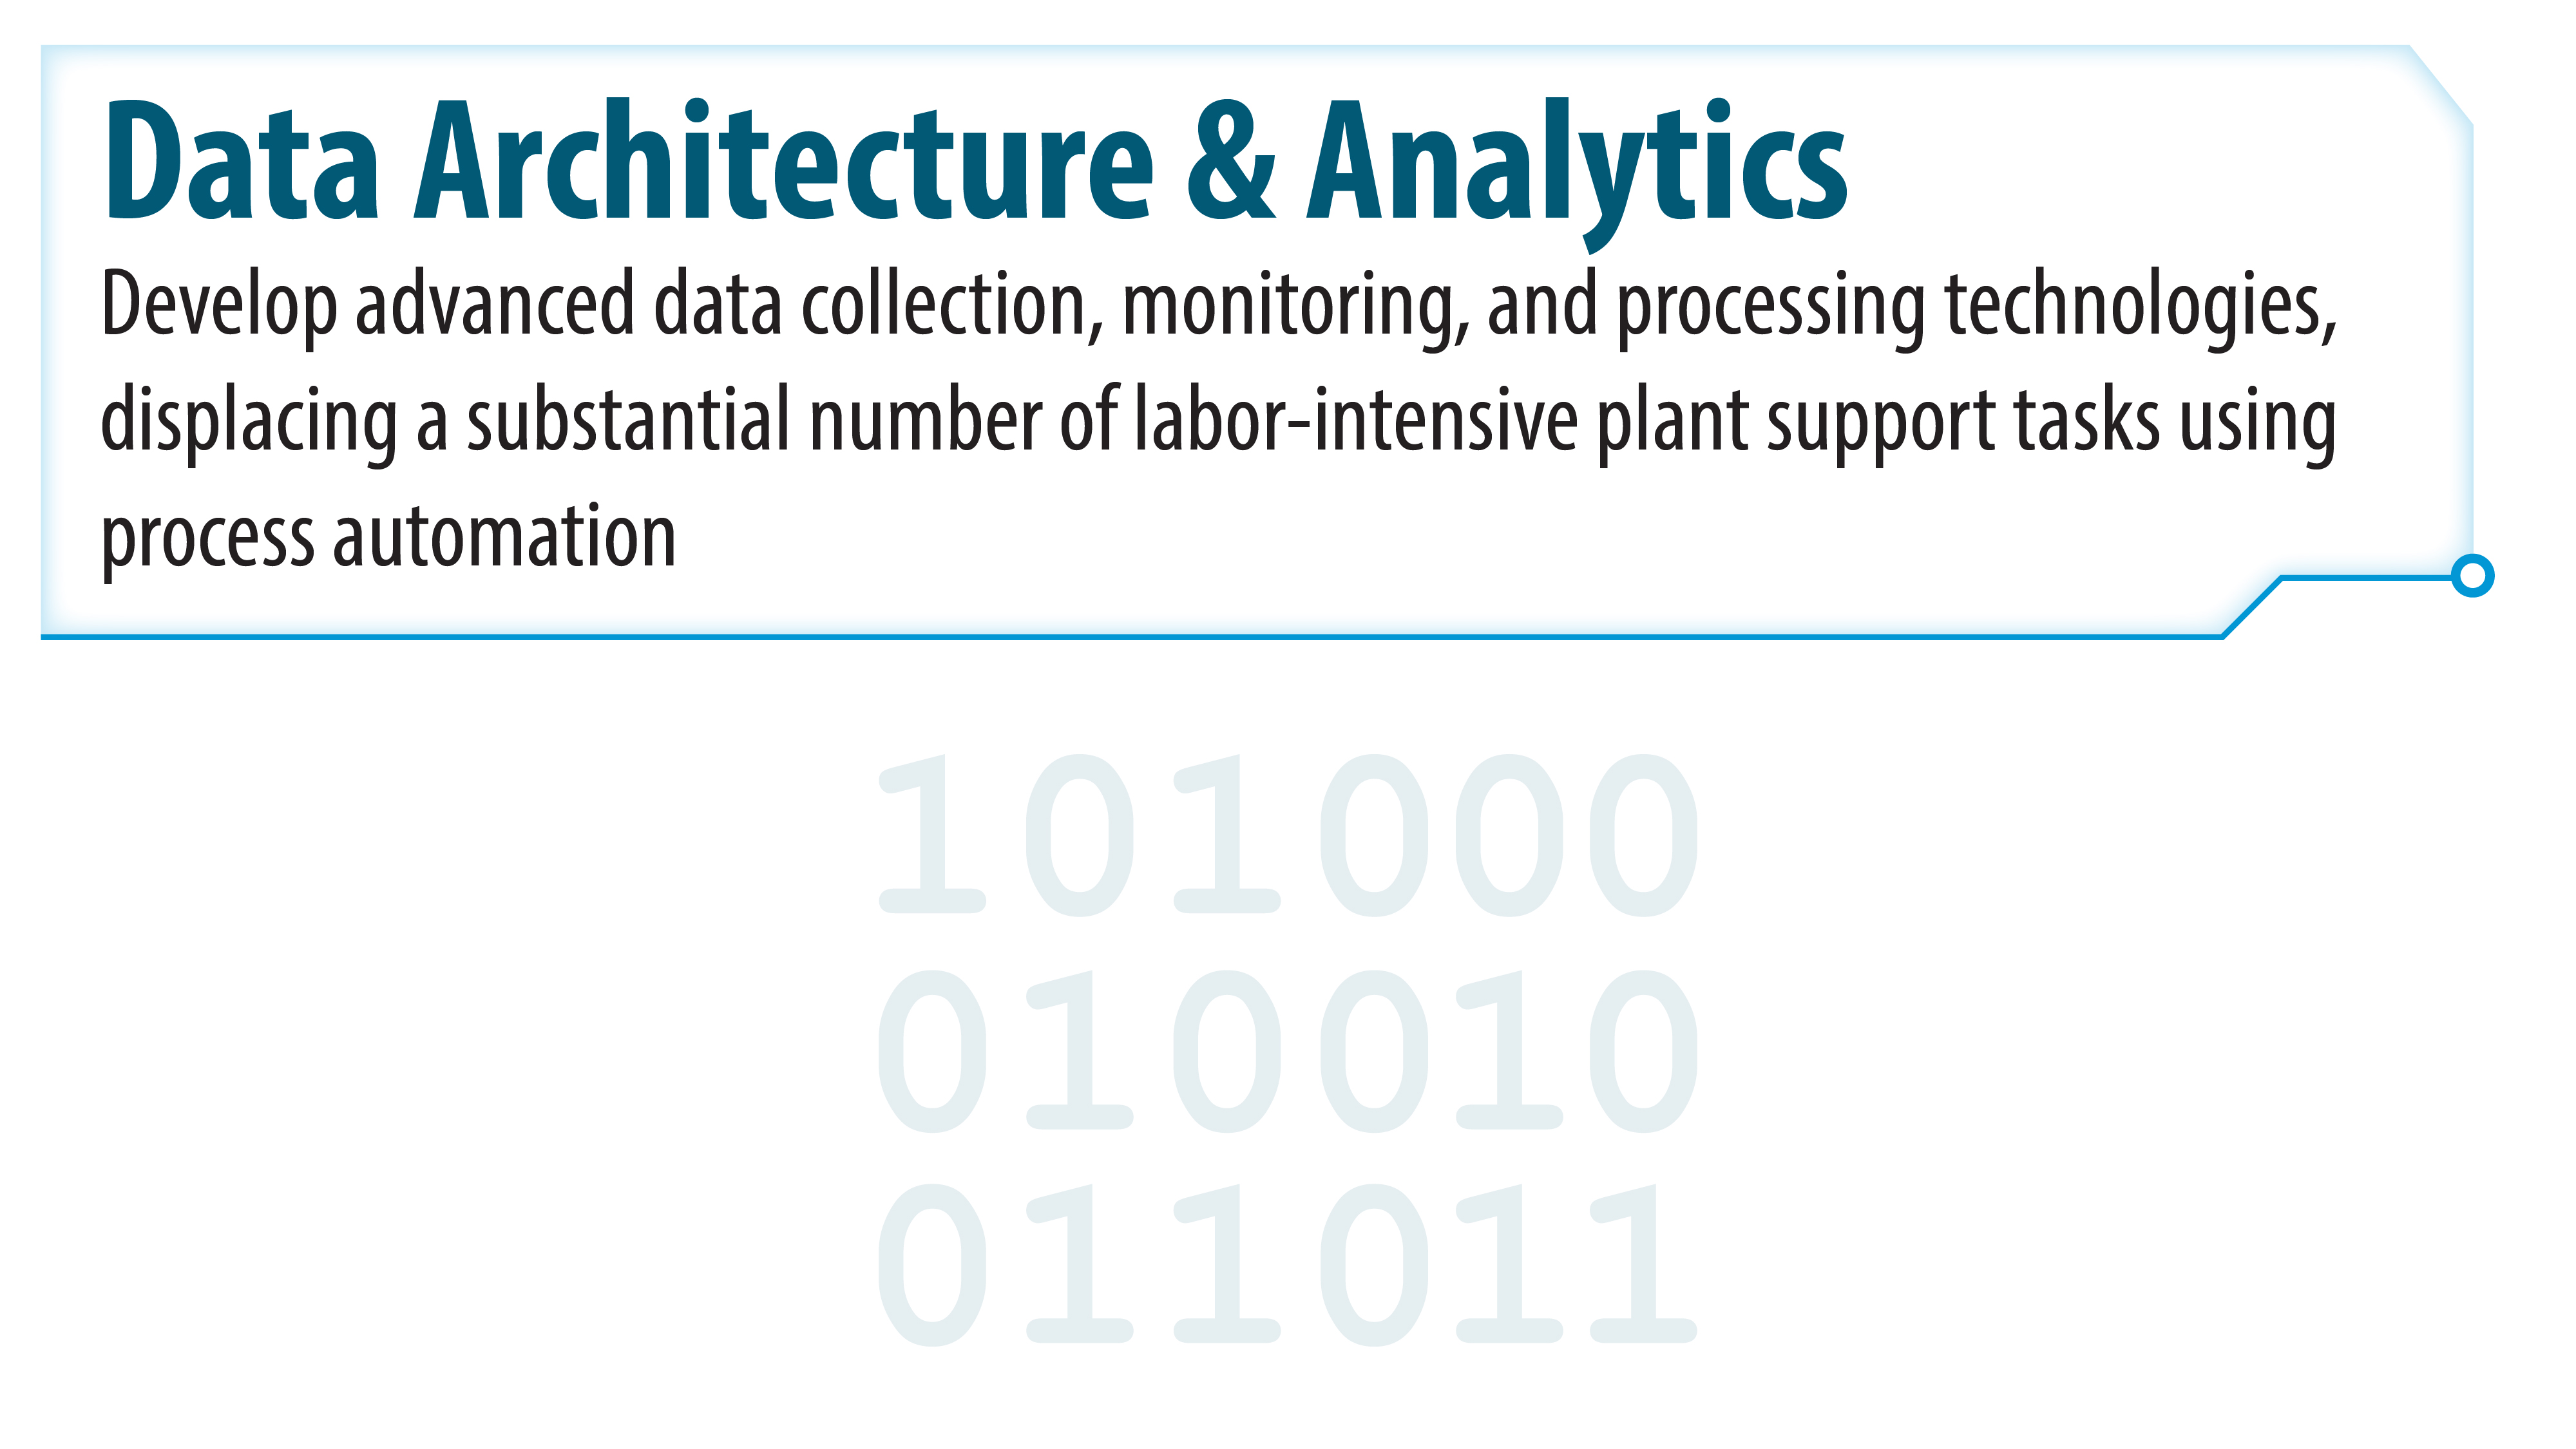 Data Architecture and Analytics